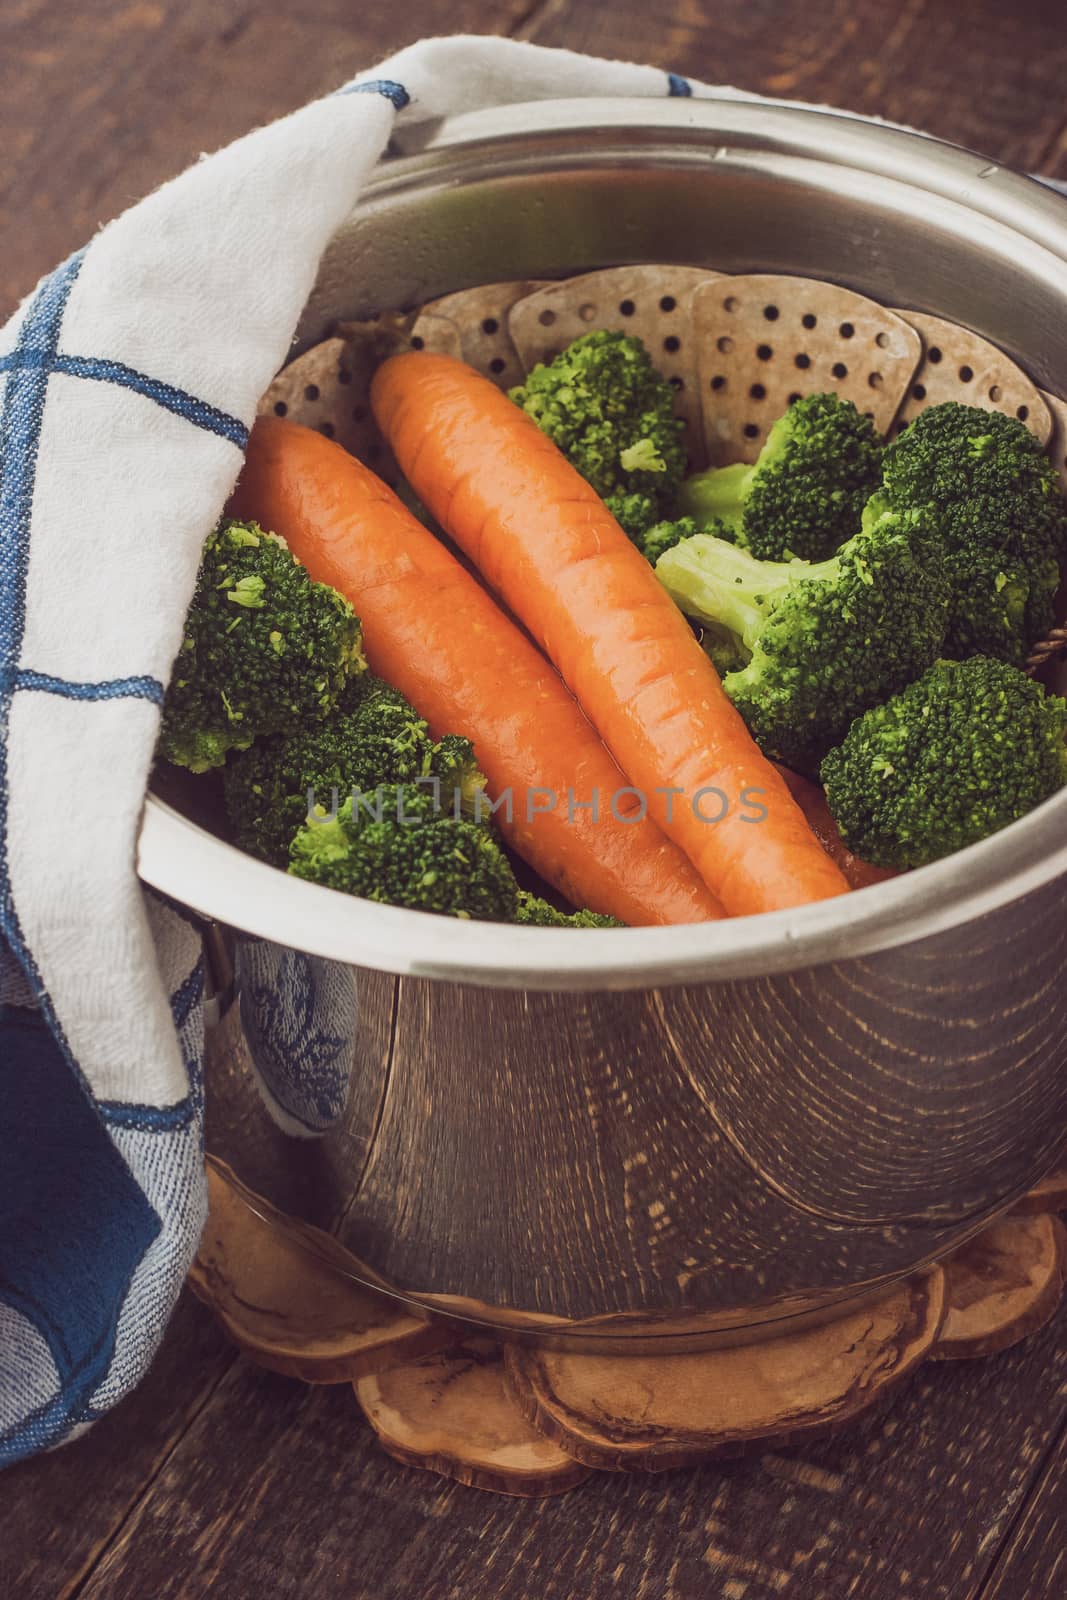 Vegetable for steaming by Deniskarpenkov